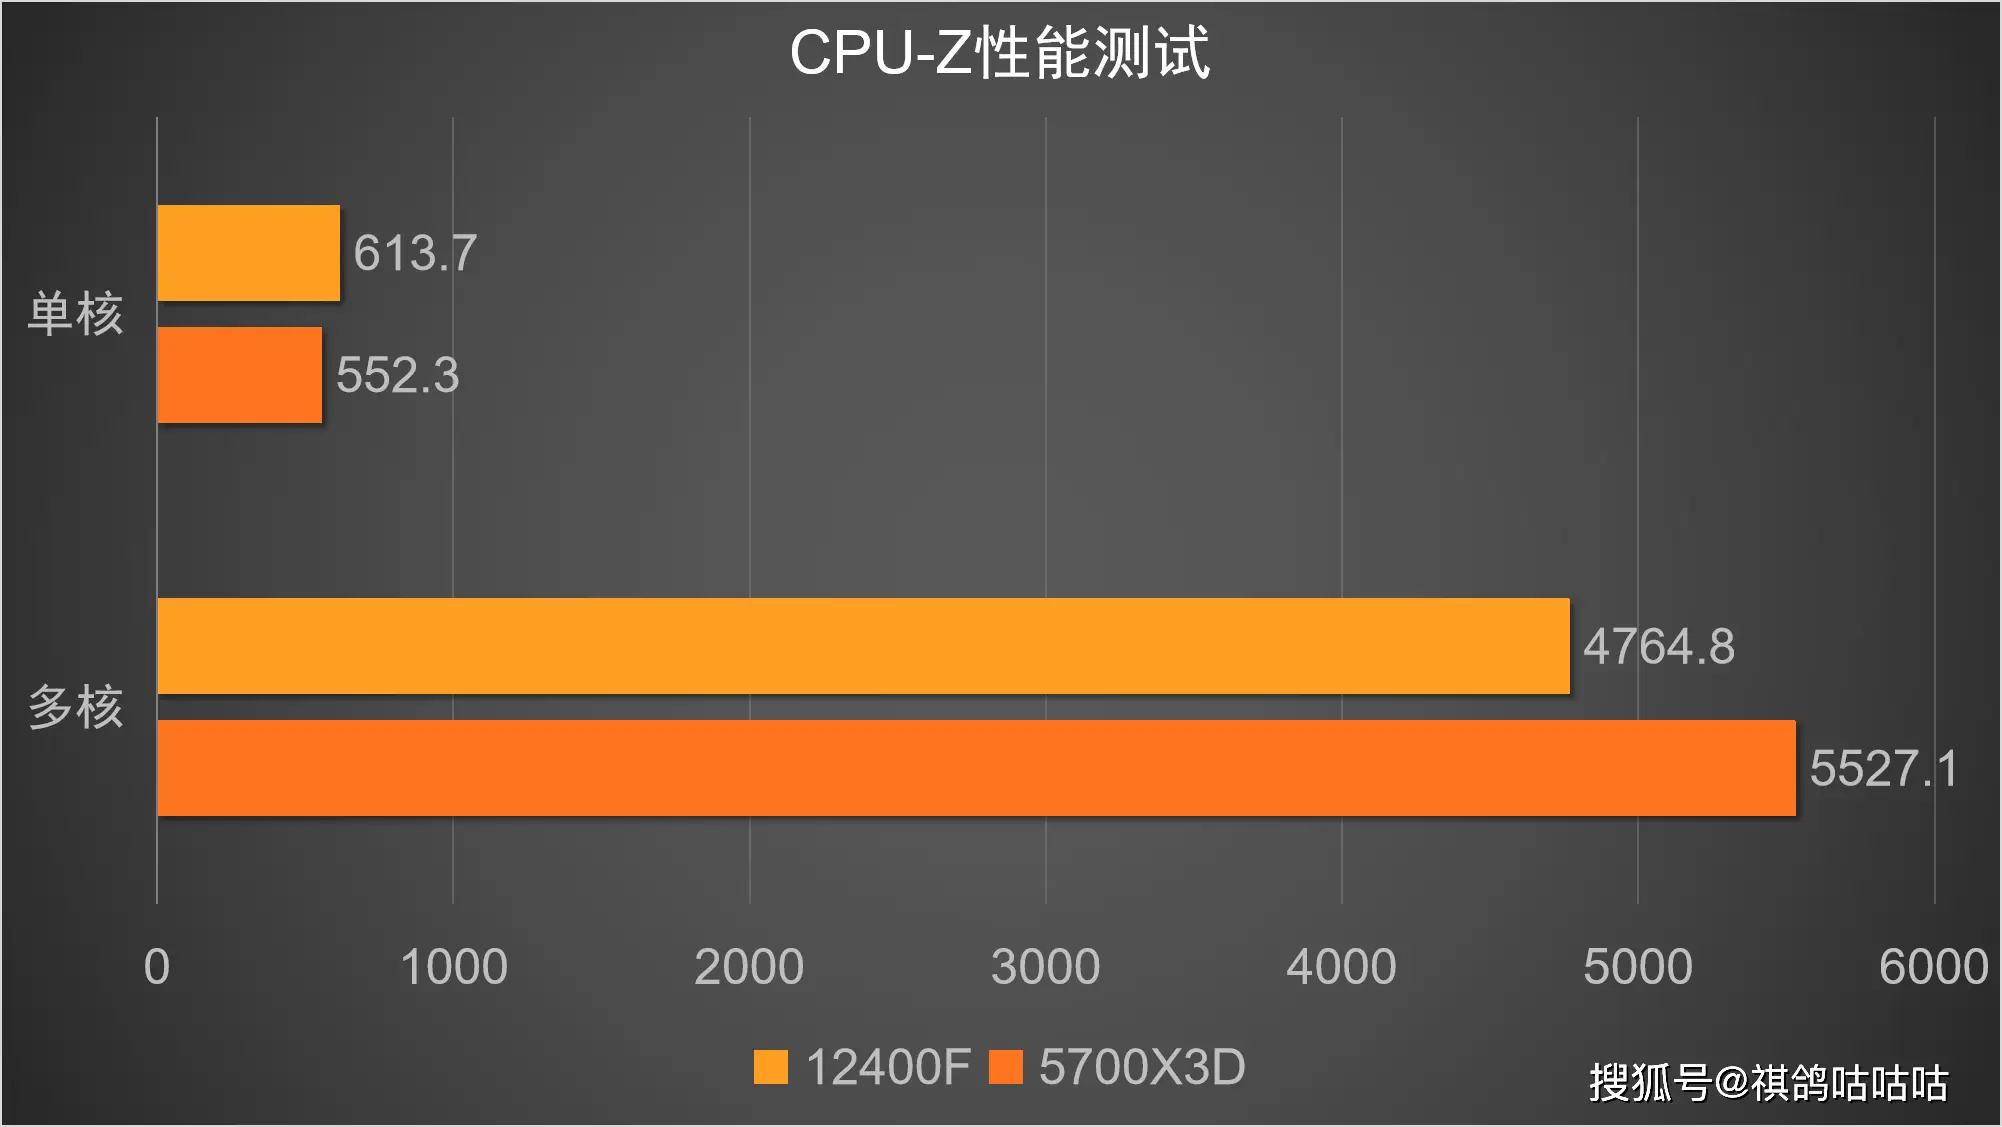 AMD 主板无法适配 DDR4 内存，设计欠妥令人困扰  第3张